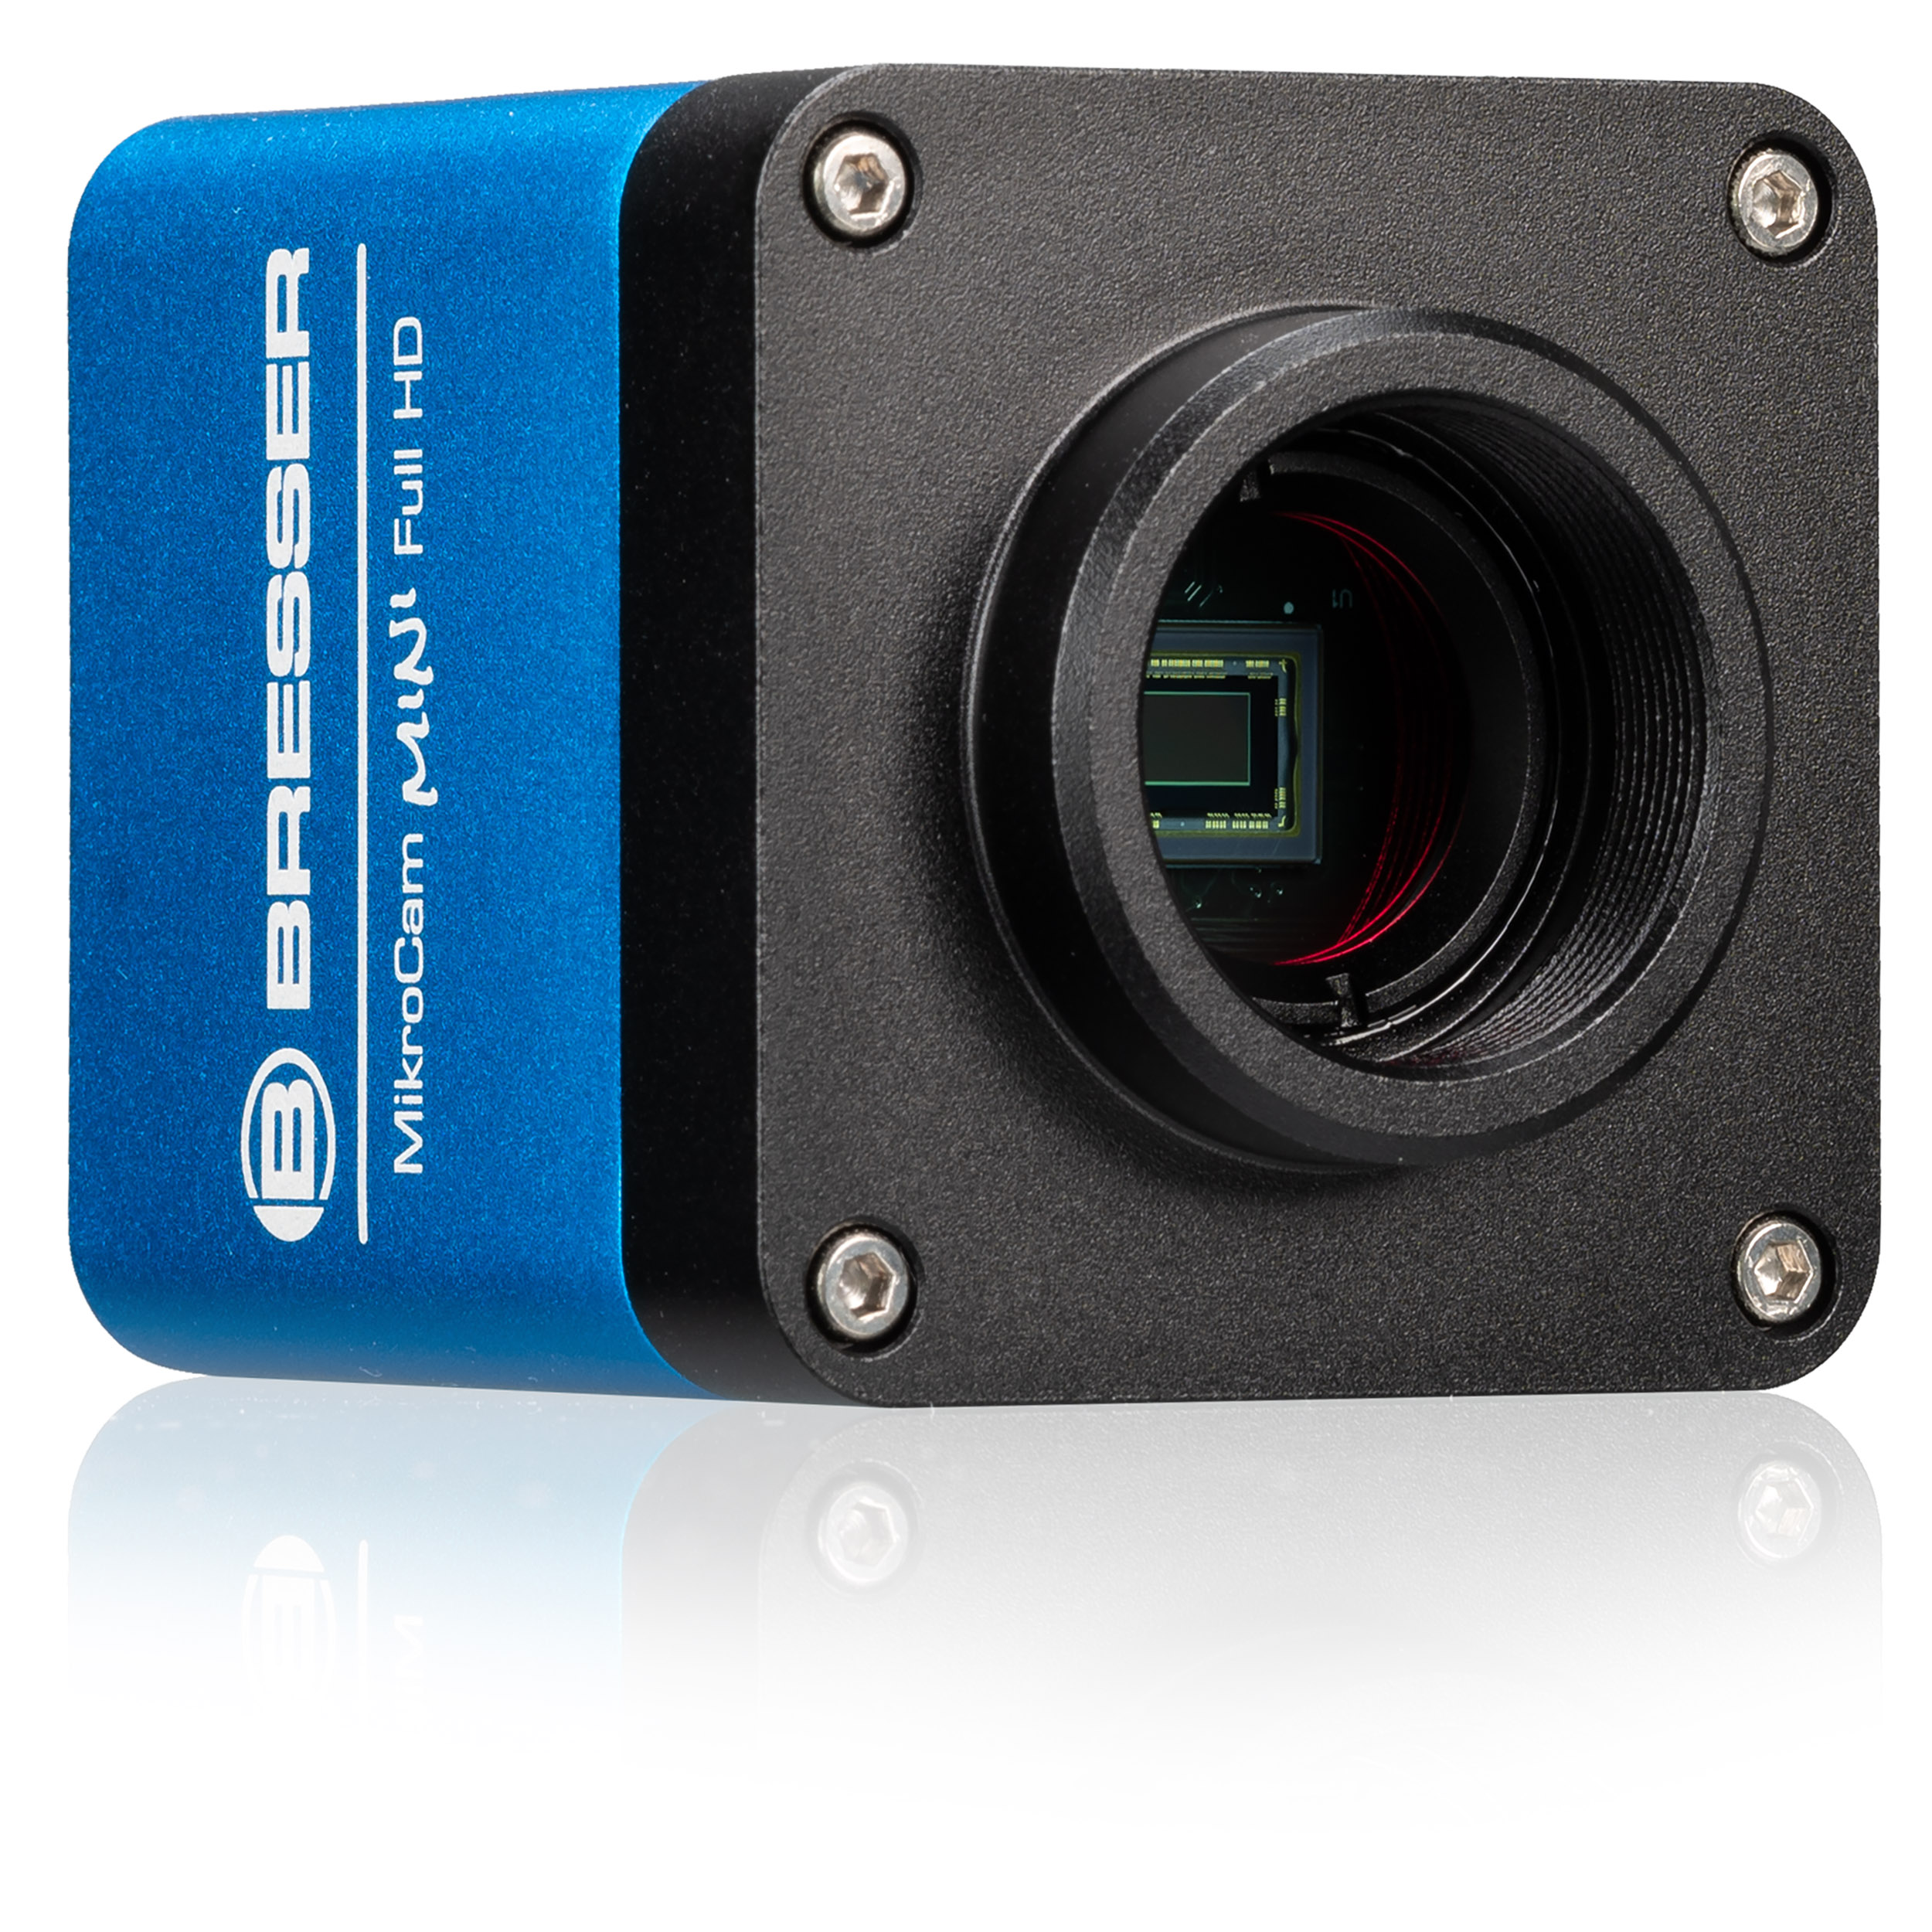 MikroCam BRESSER mini caméra microscopique Full HD HDMI